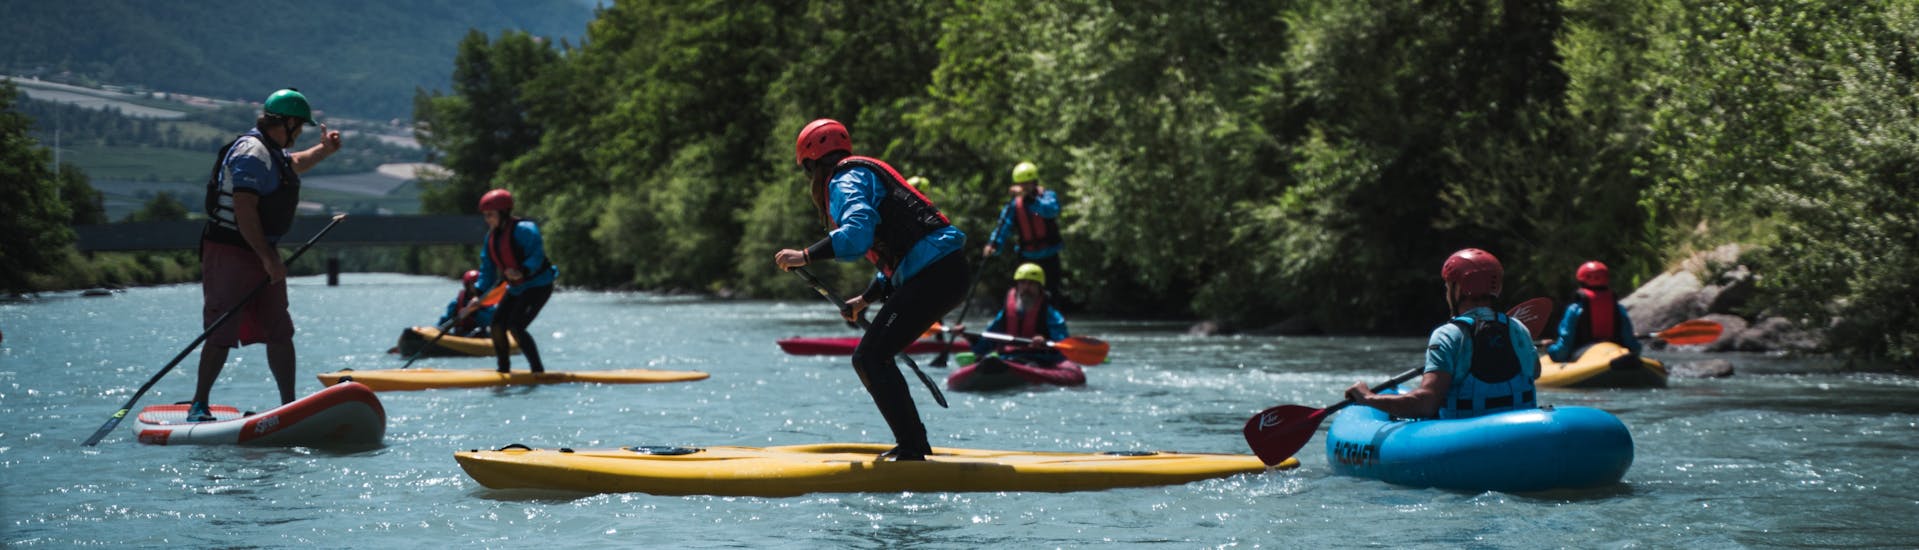 Tutti imparano durante lo Stand Up Paddling sull'Adige in Val Venosta - River Tour con Adventure Südtirol.